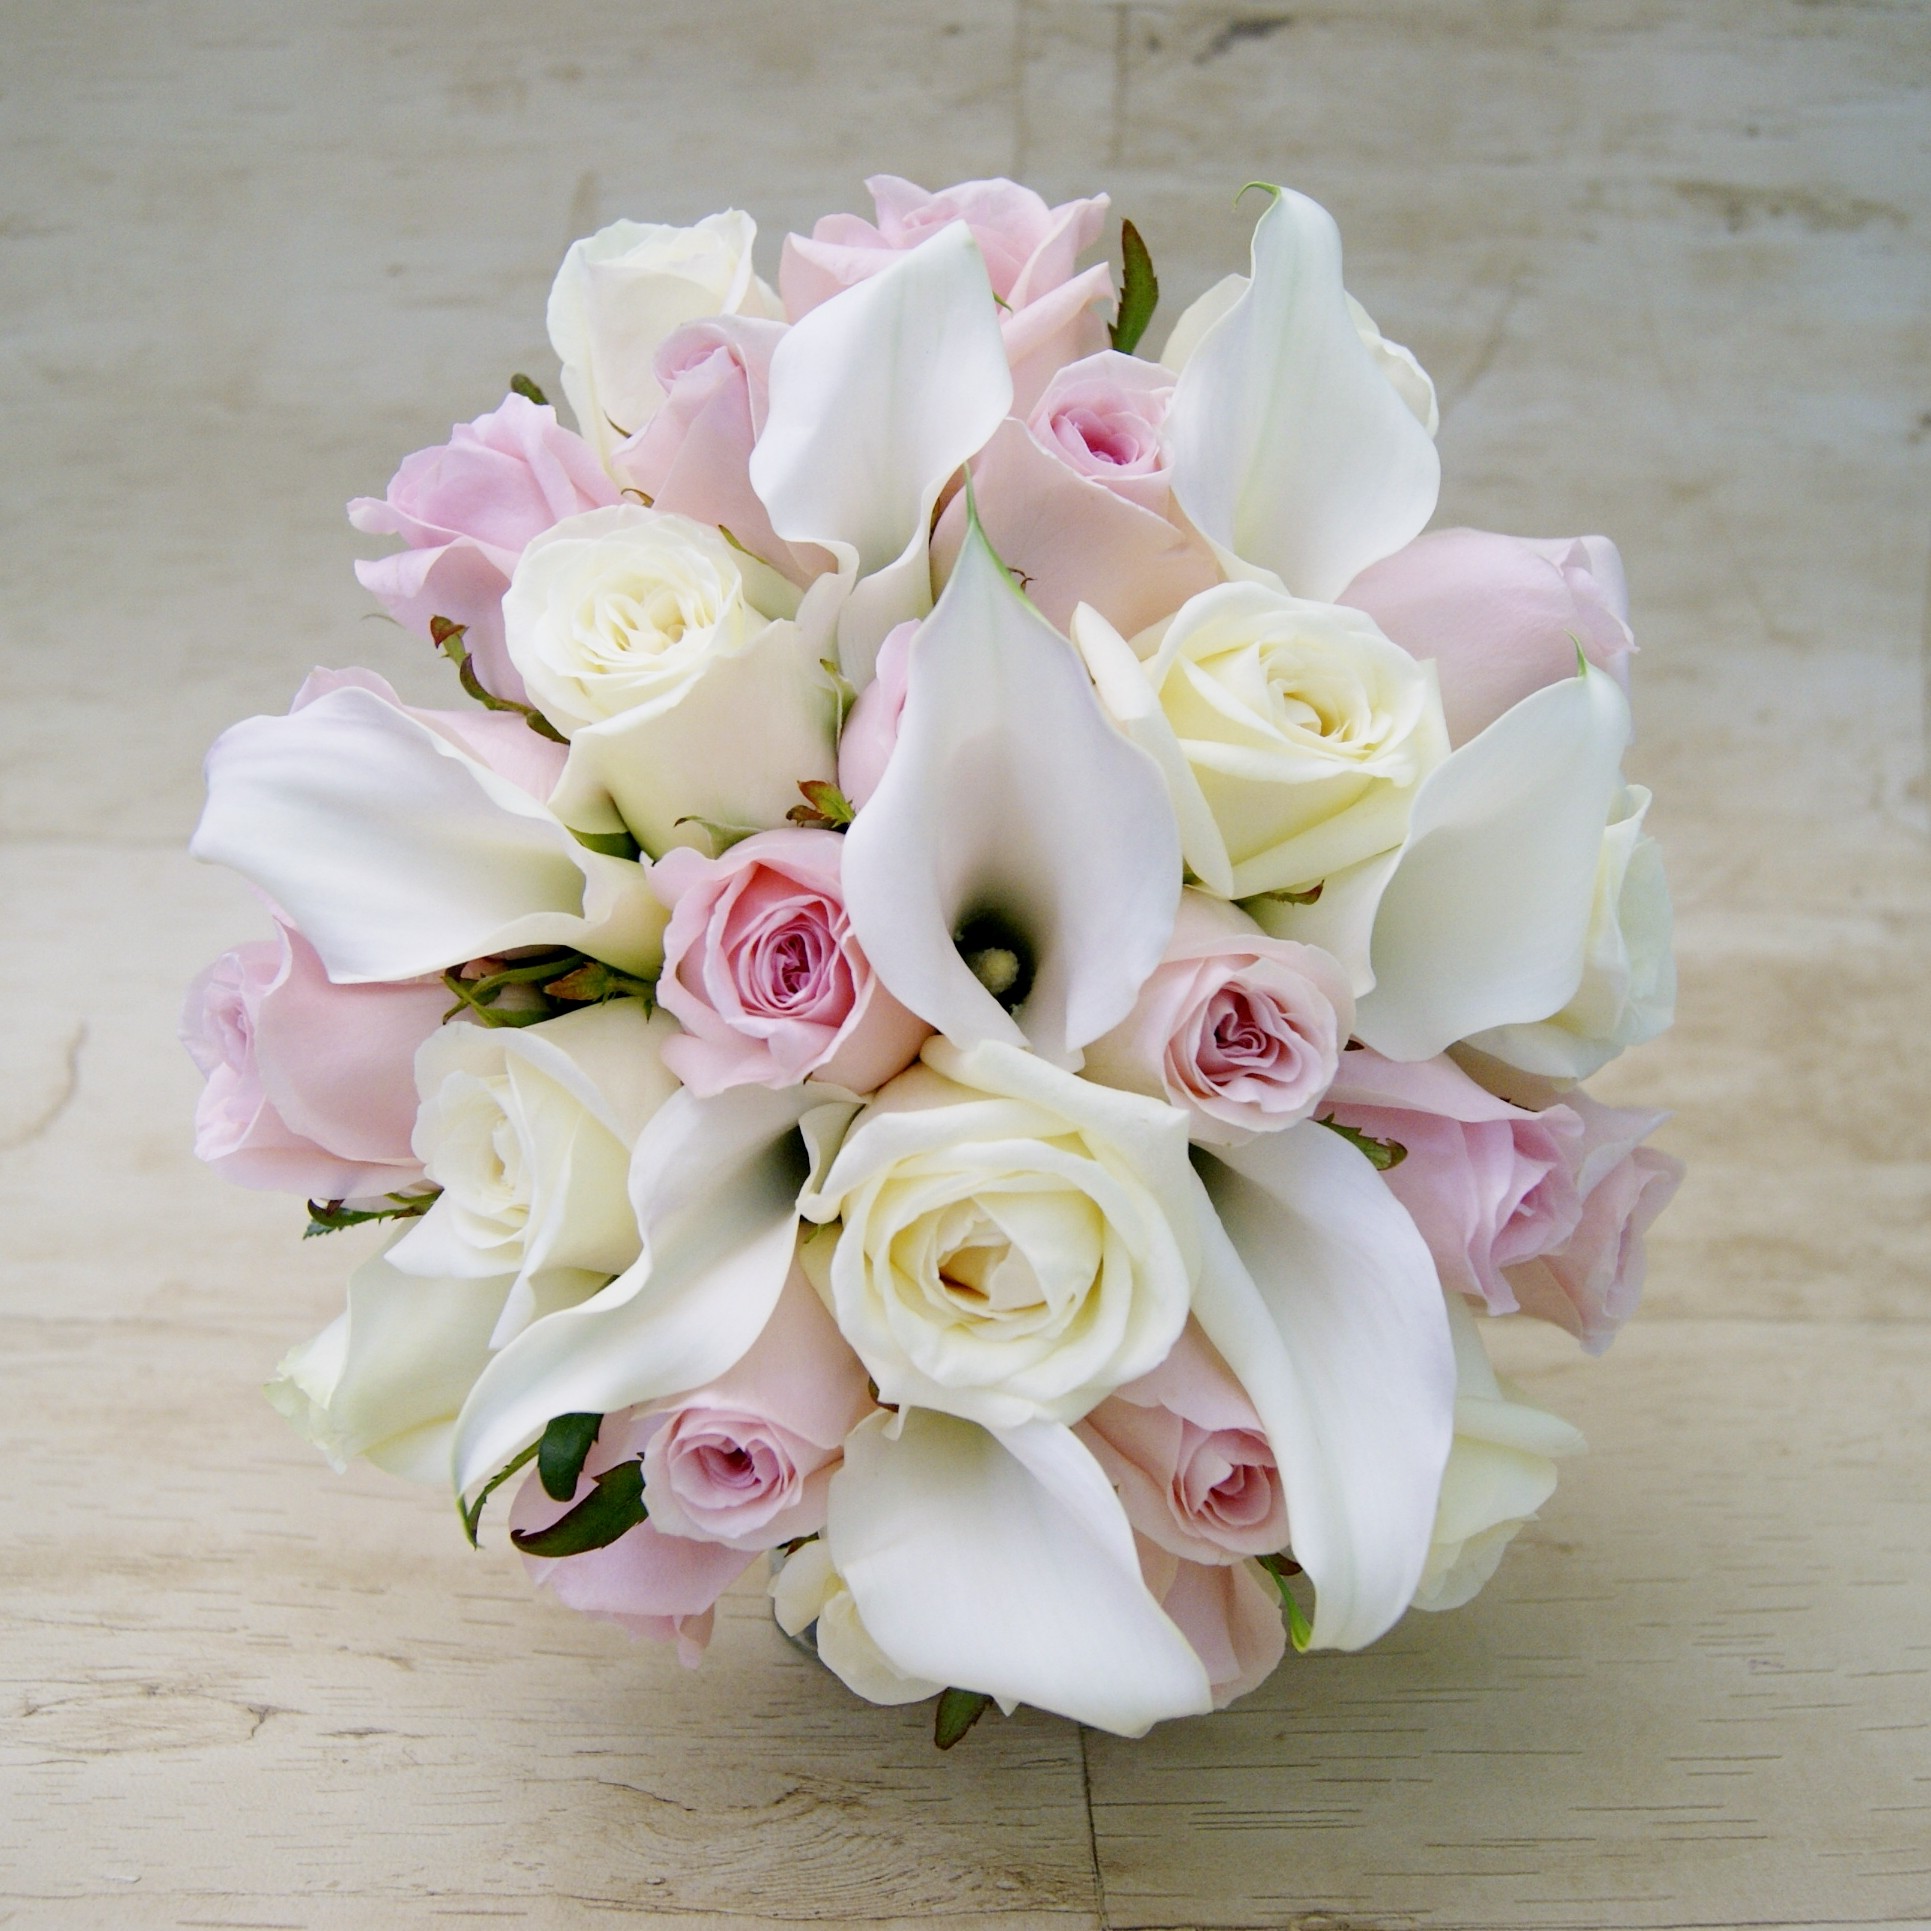 Ramo de novia con calas blancas y rosas blancas y rosas.